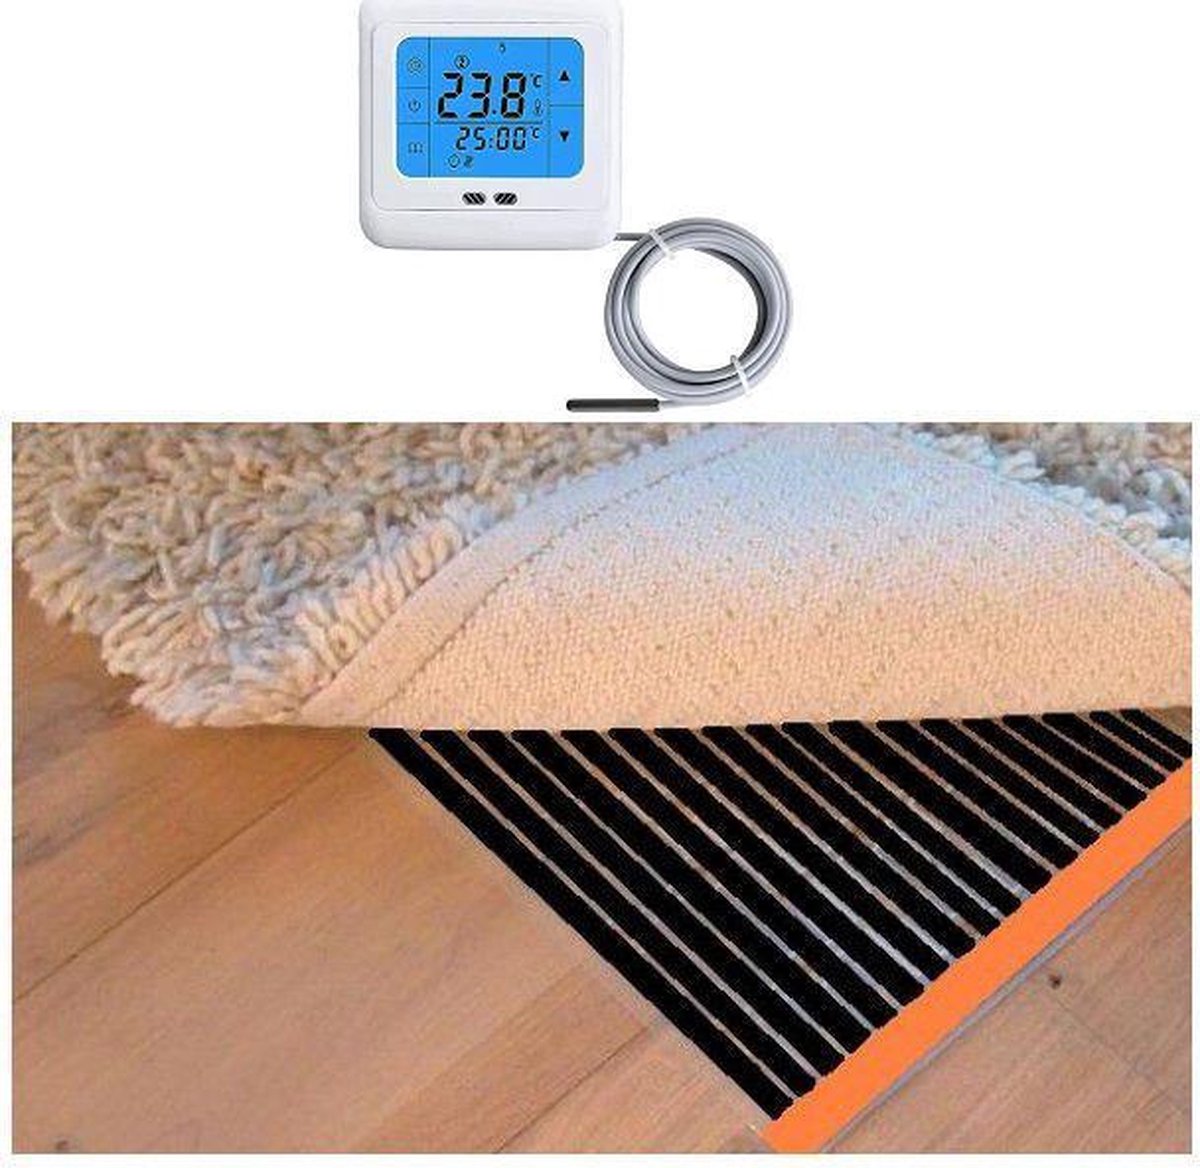 Woonkamer verwarmingsfolie infrarood folie voor vloerbedekking, tapijten vloerkleden elektrisch met TH 89 thermostaat 125 cm x 450 cm 900 Watt